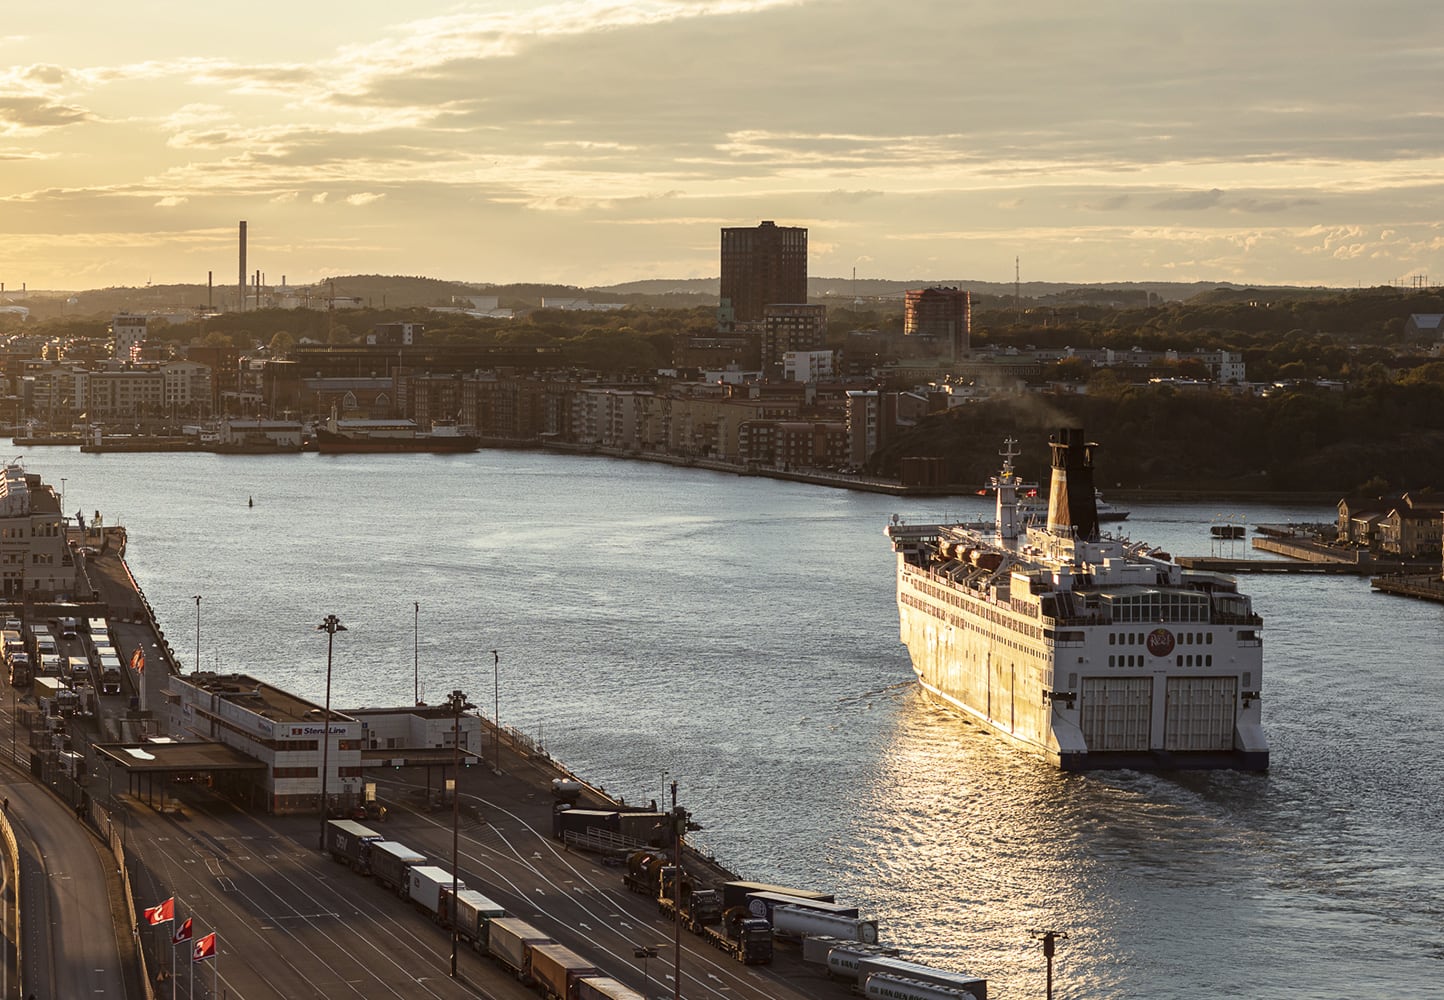 Stena ferry in the port of Gothenburg